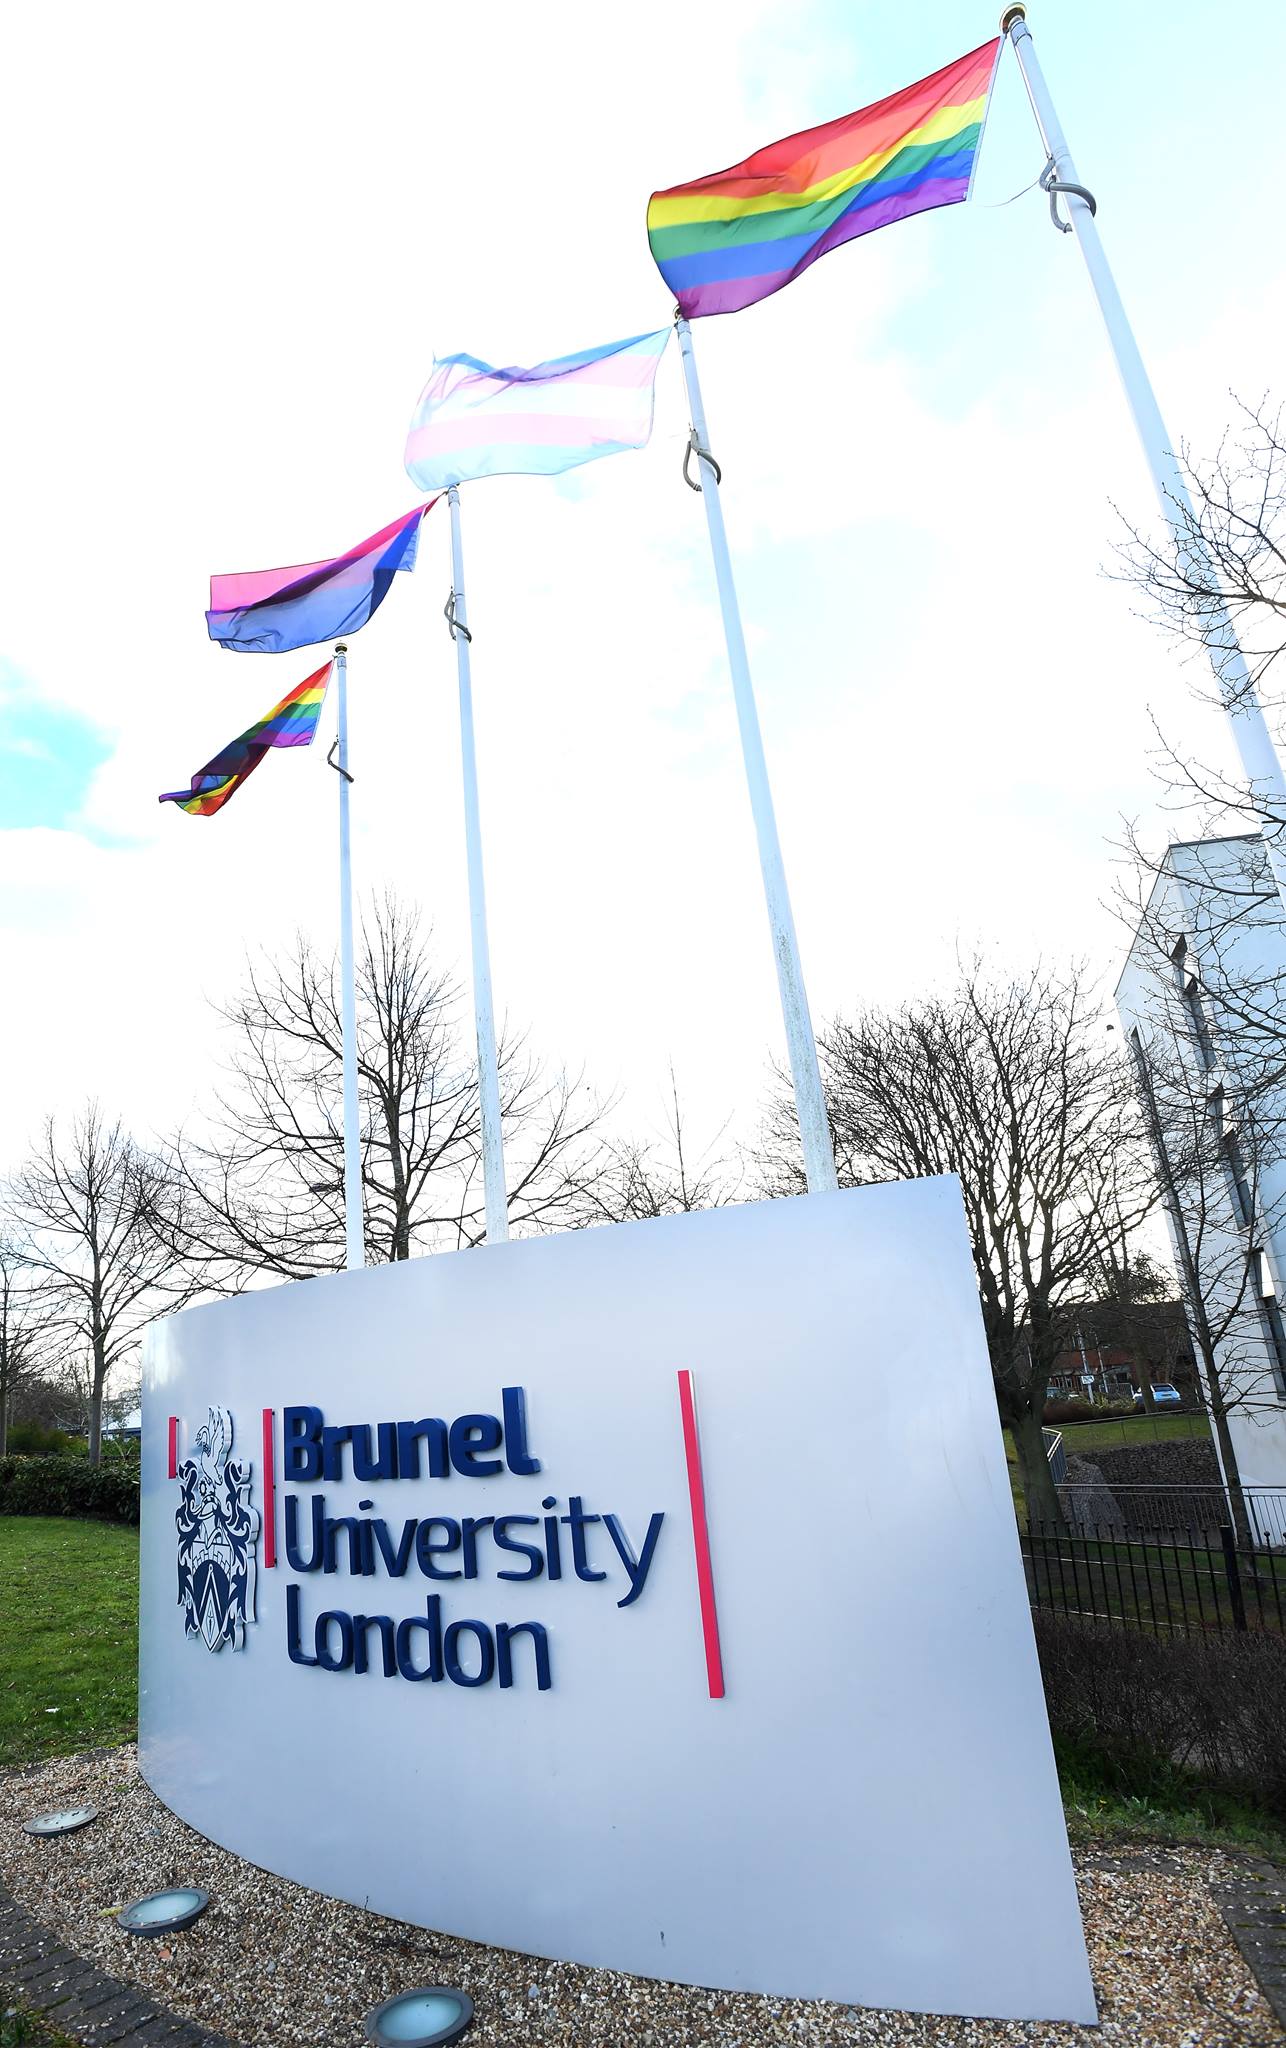 جامعة برونيل لندن – Brunel University London